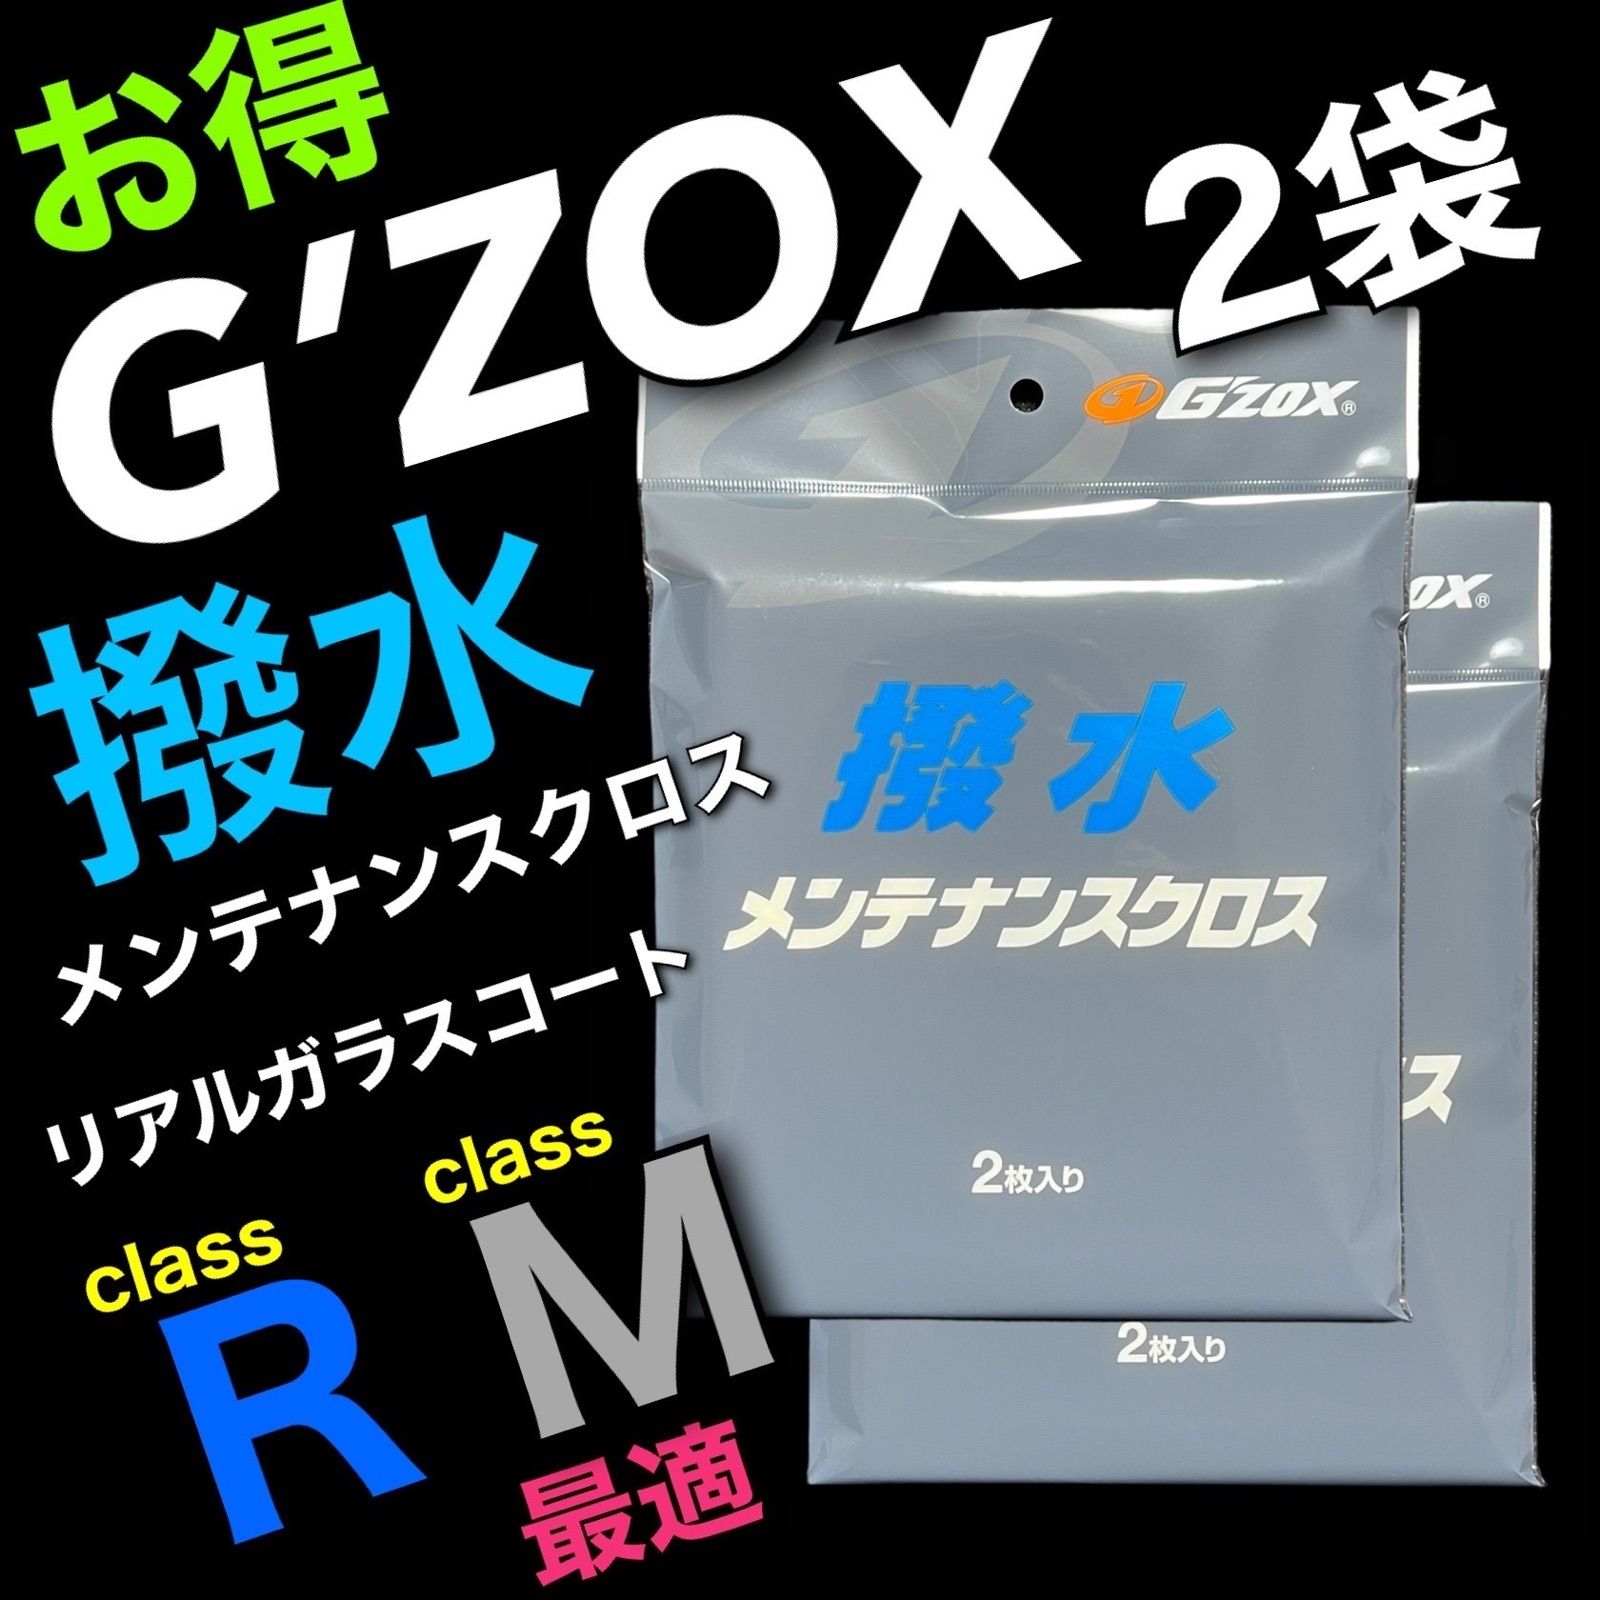 Gzox リアルガラスコート classM - メンテナンス用品